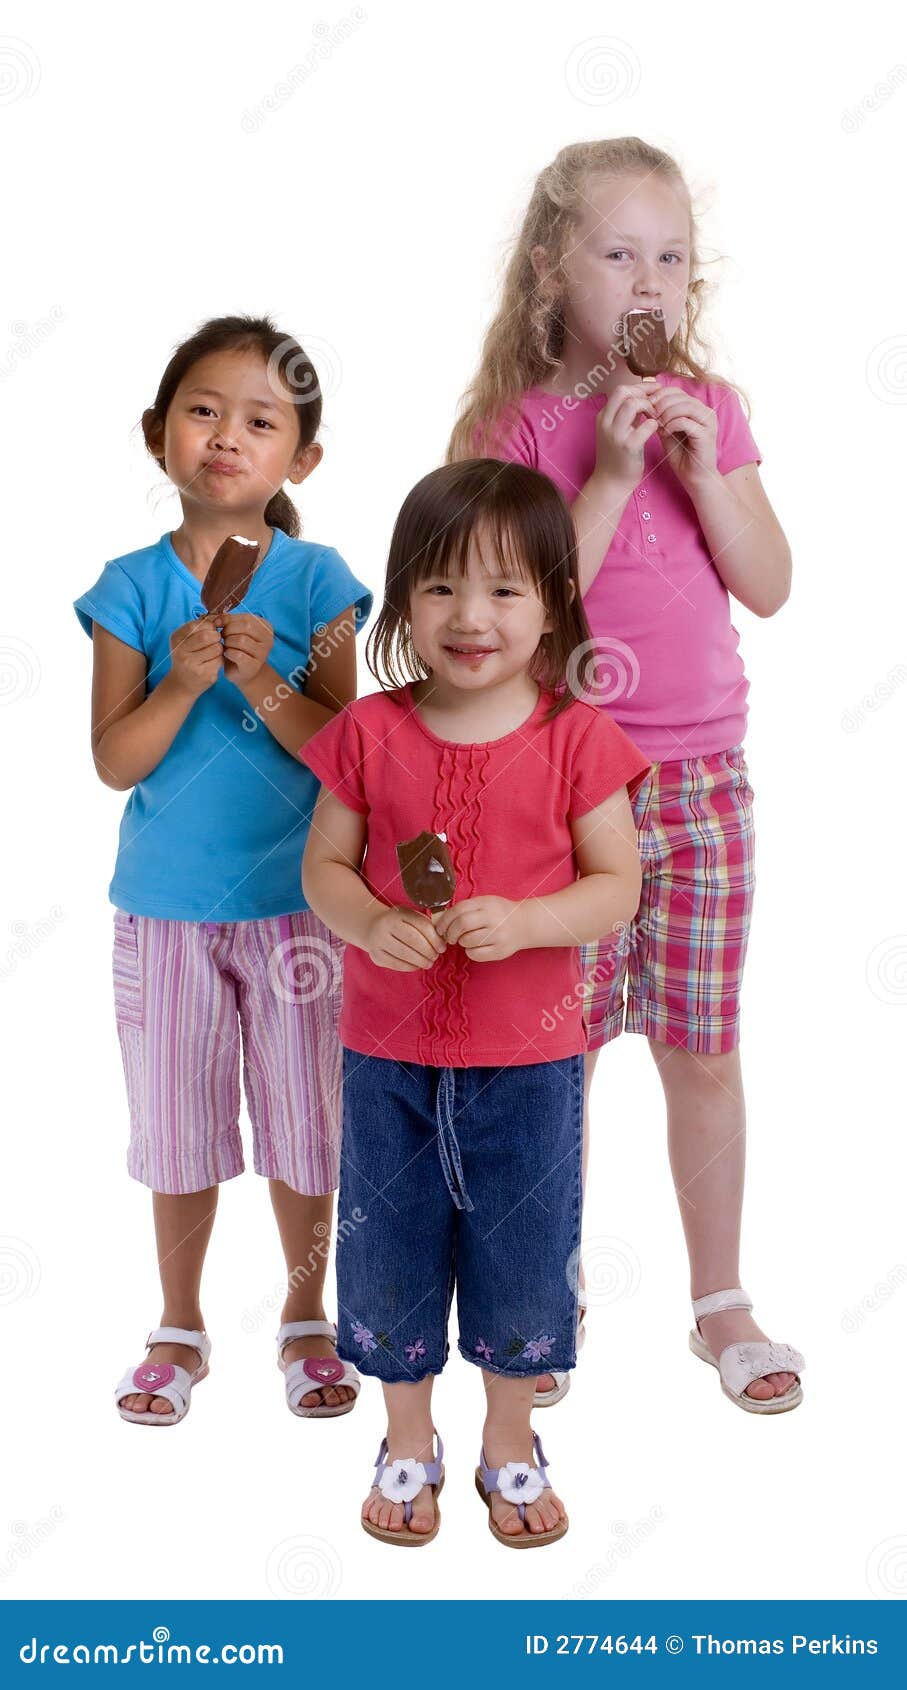 Cône de crême glacée. Trois jeunes filles avec un festin d'été. Cônes de crême glacée.